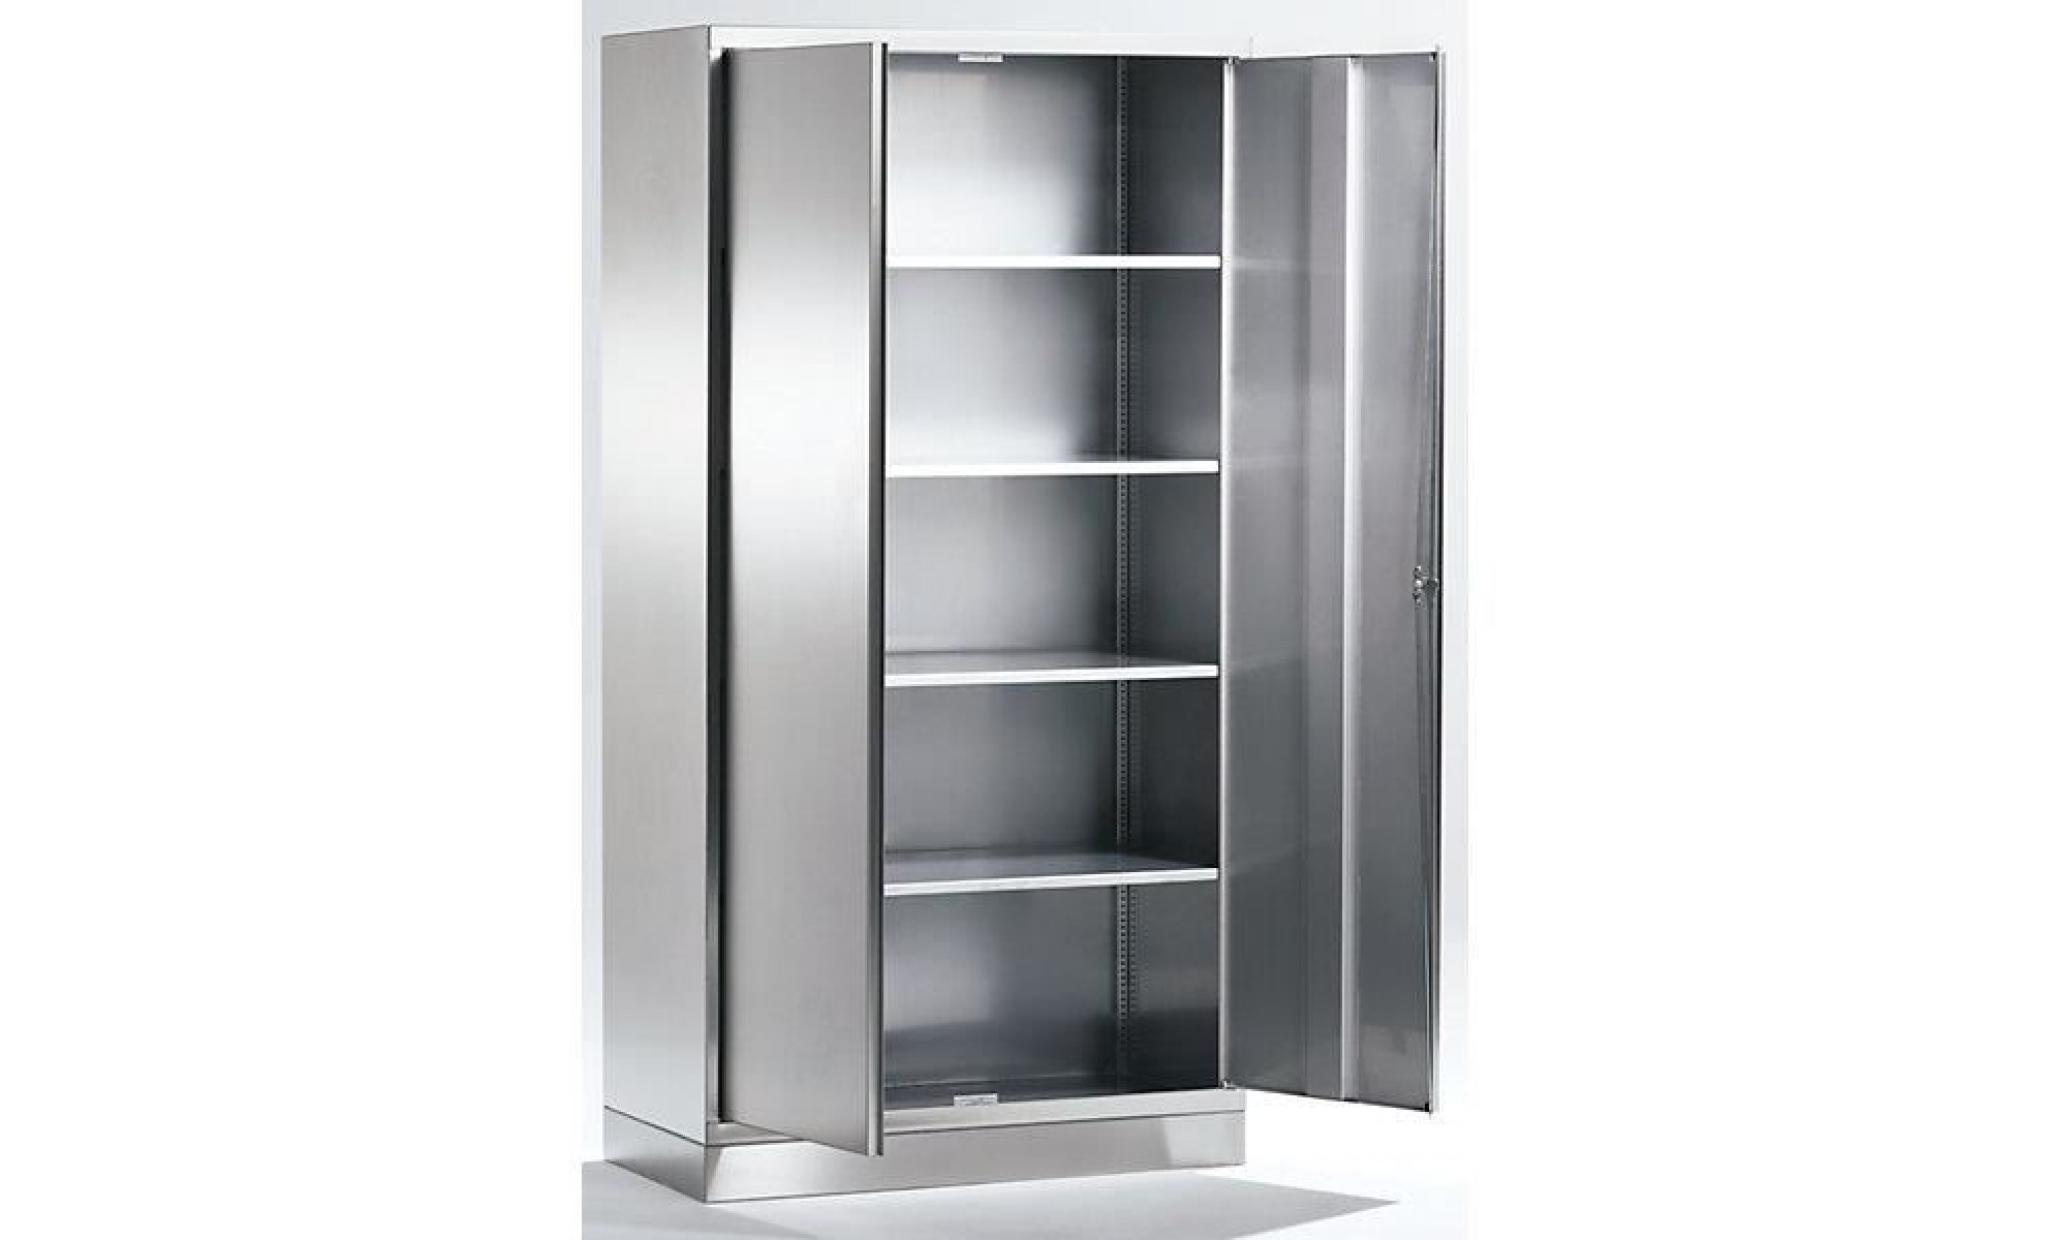 armoire universelle en inox   armoire à portes battantes h x l x p 1950 x 1000 x 500 mm   armoire armoire de vestiaire armoire